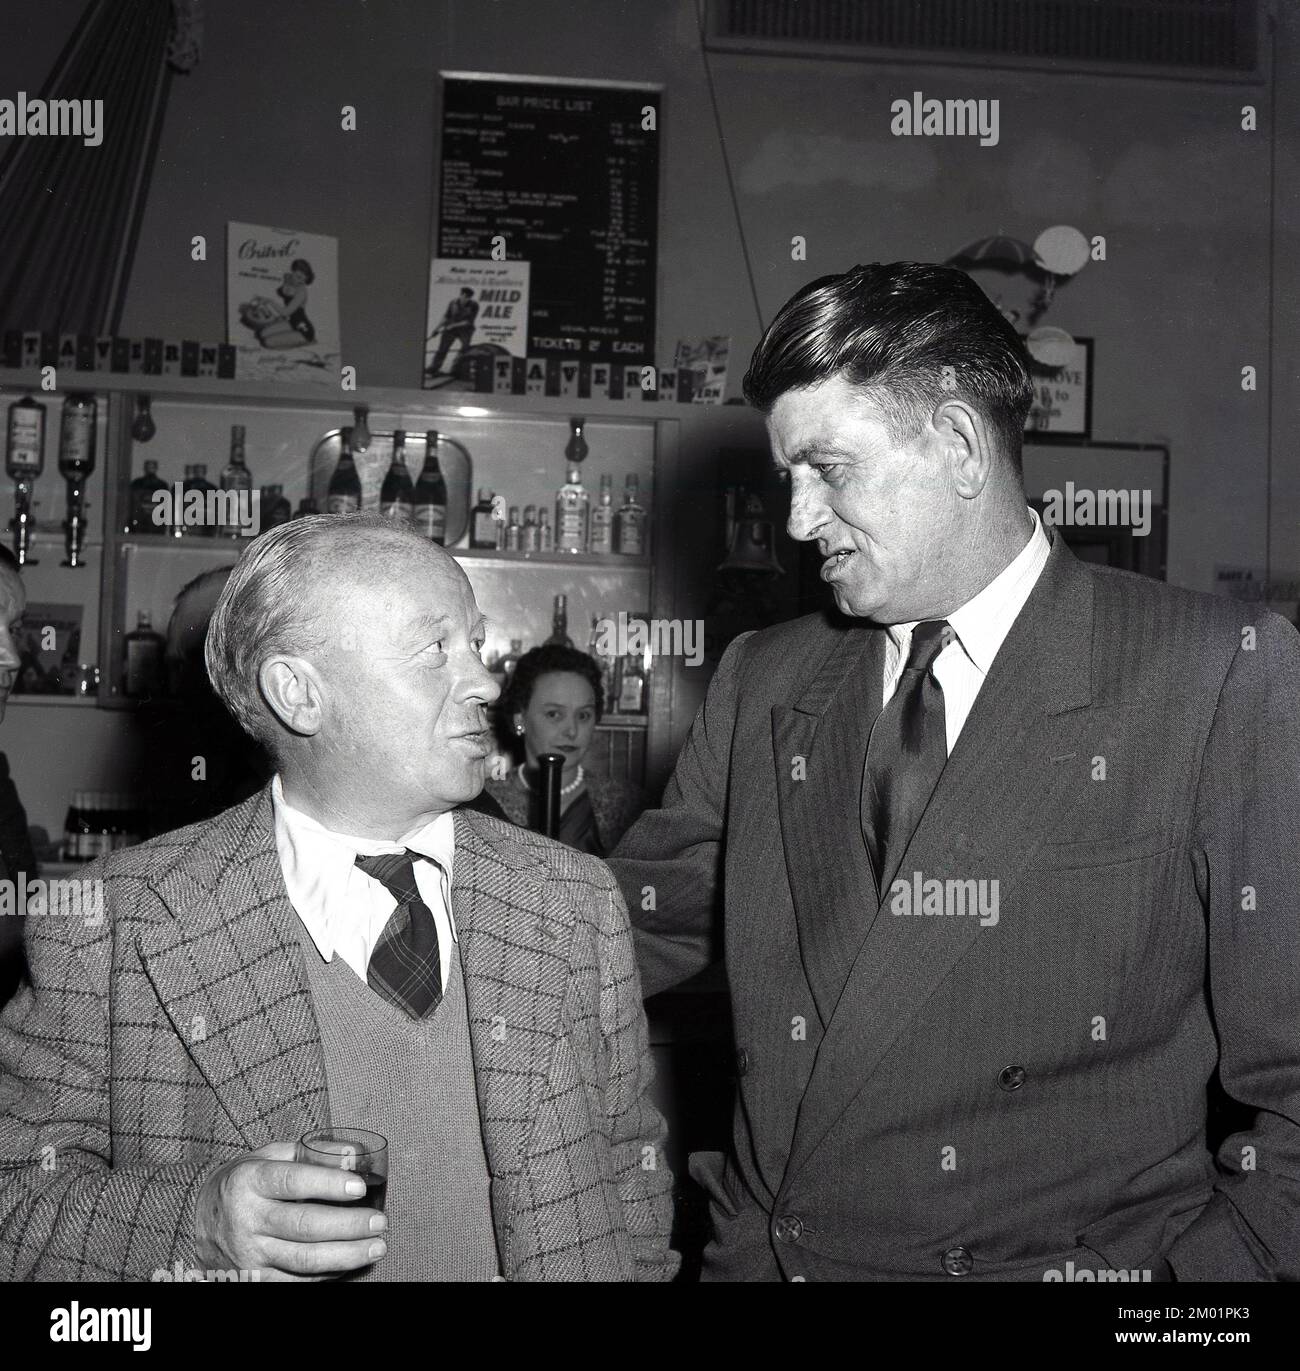 1950er, historisch, das ist ein Witz... nach der Arbeit und zwei Stahlarbeiter mit Hemd und Krawatte, die an einer gesellschaftlichen Veranstaltung teilnehmen und zusammen einen Drink in der Bar Port Talbot, South Wales, Großbritannien, trinken. Hinter der Bar ist eine Werbung für Mitchells & Butlers Mild Ale zu sehen. Stockfoto